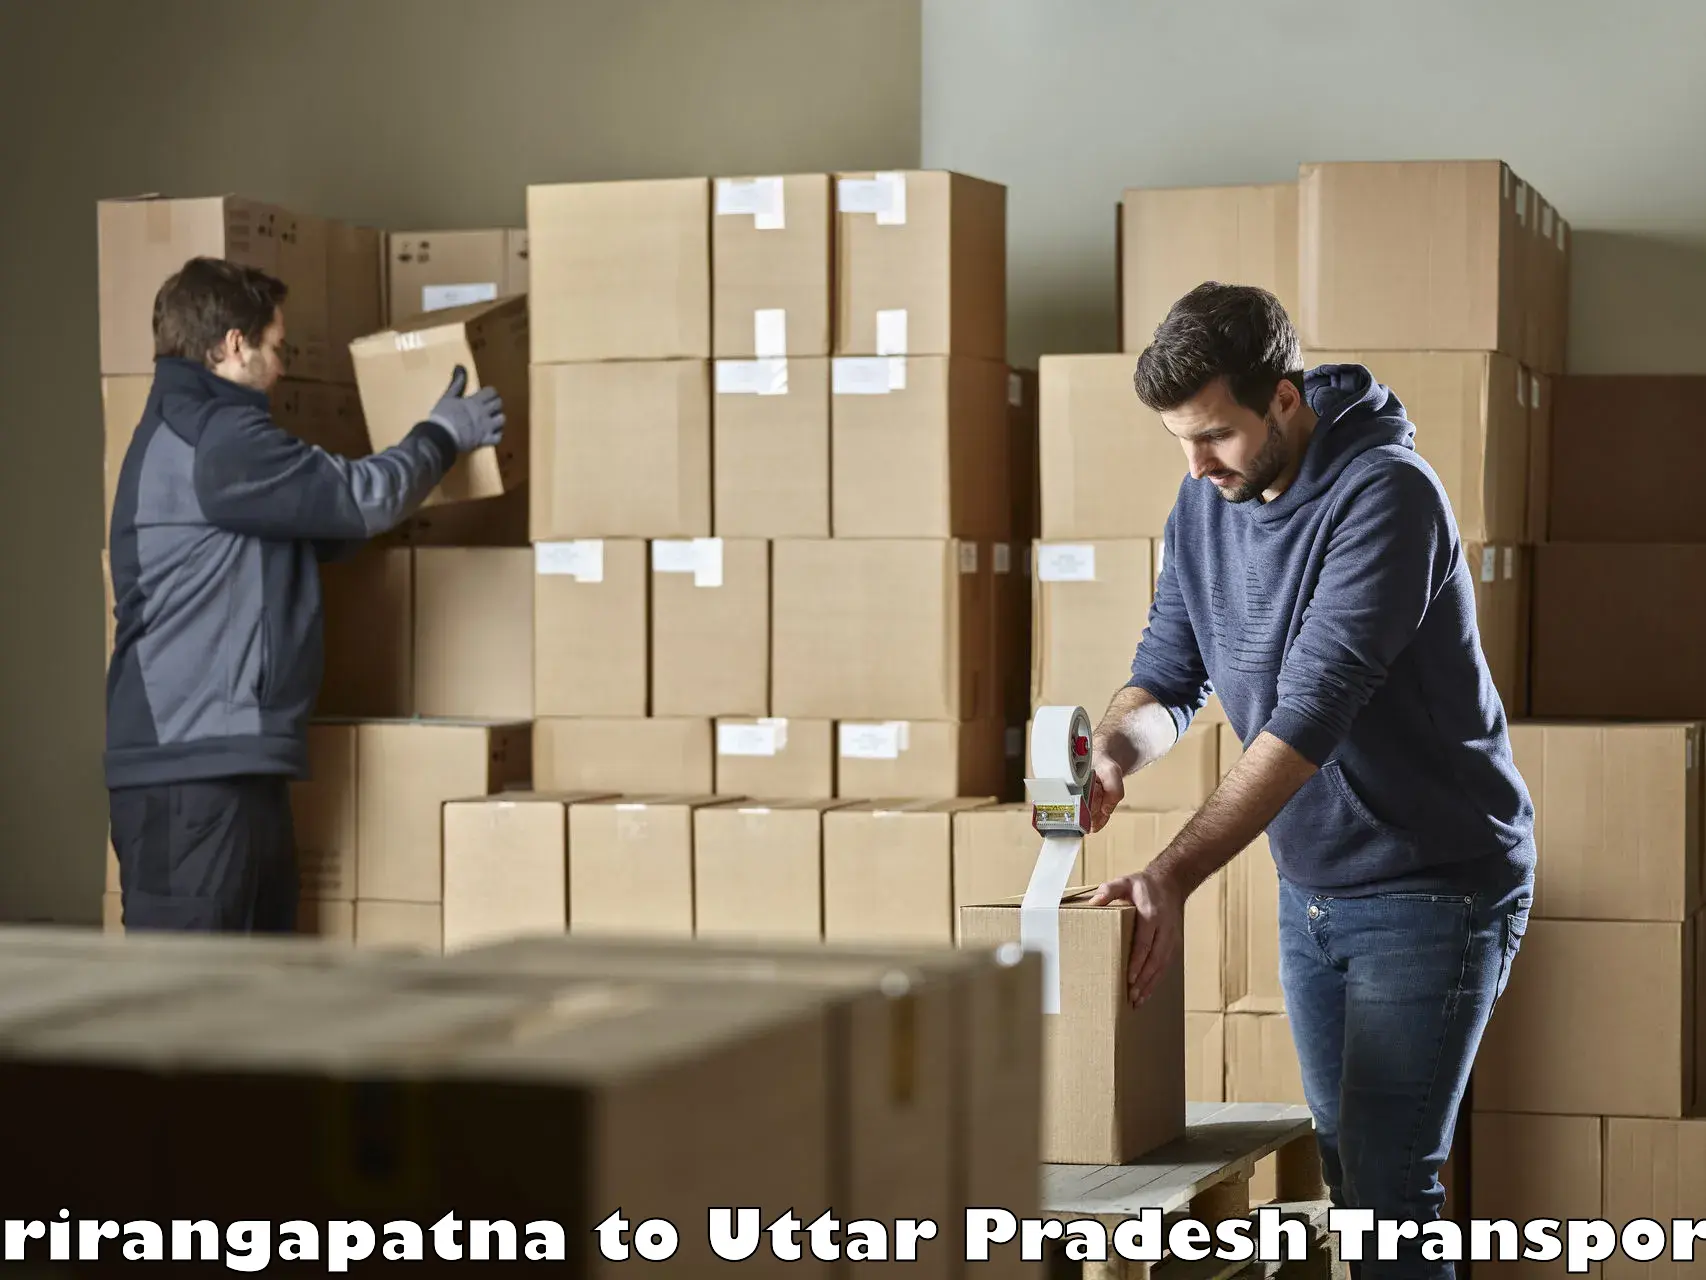 Furniture transport service Srirangapatna to Badlapur